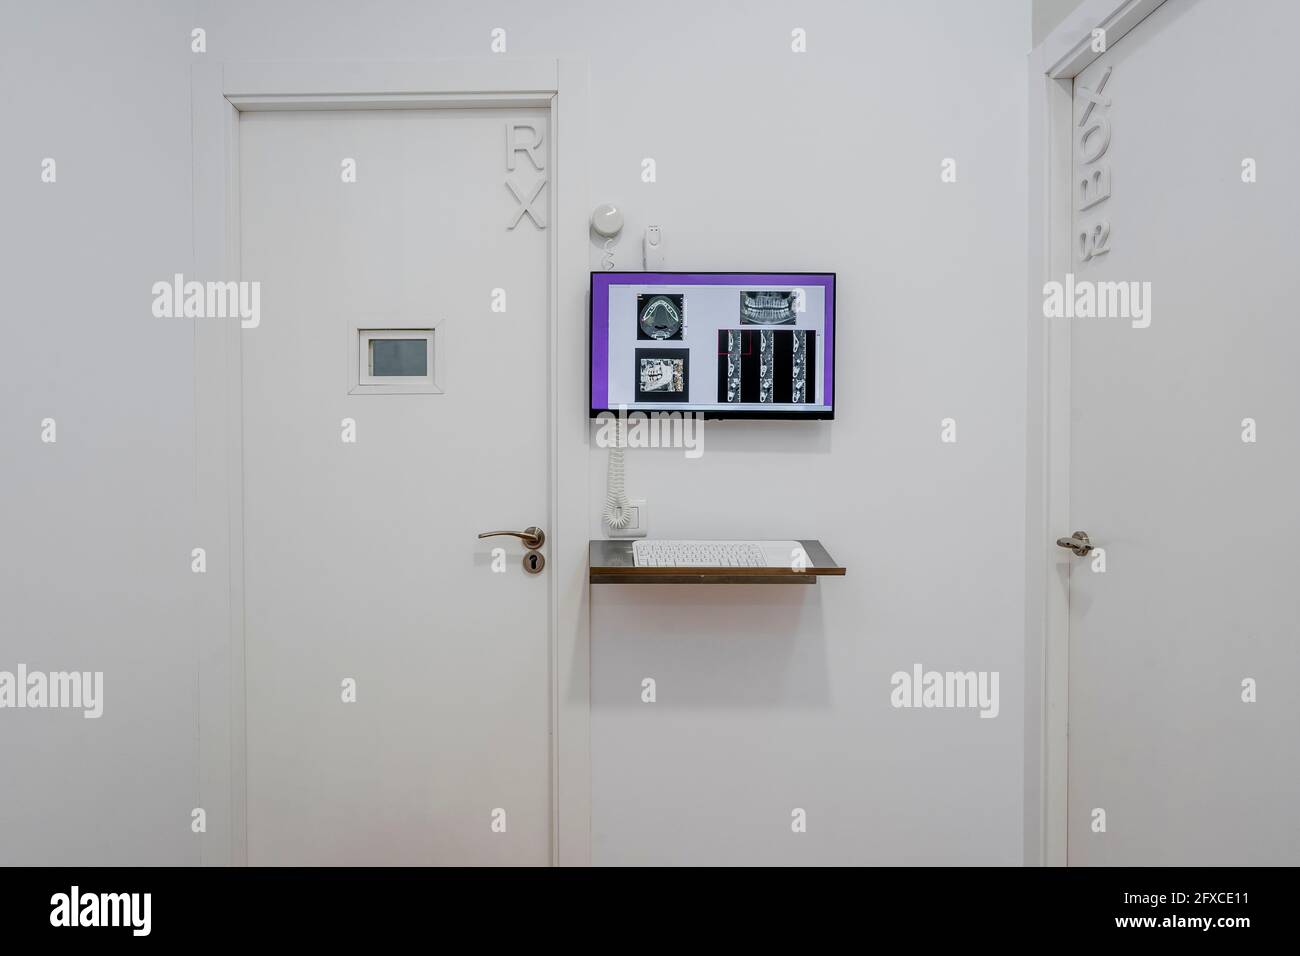 Puertas cerradas con pantalla plana en la clínica médica Foto de stock